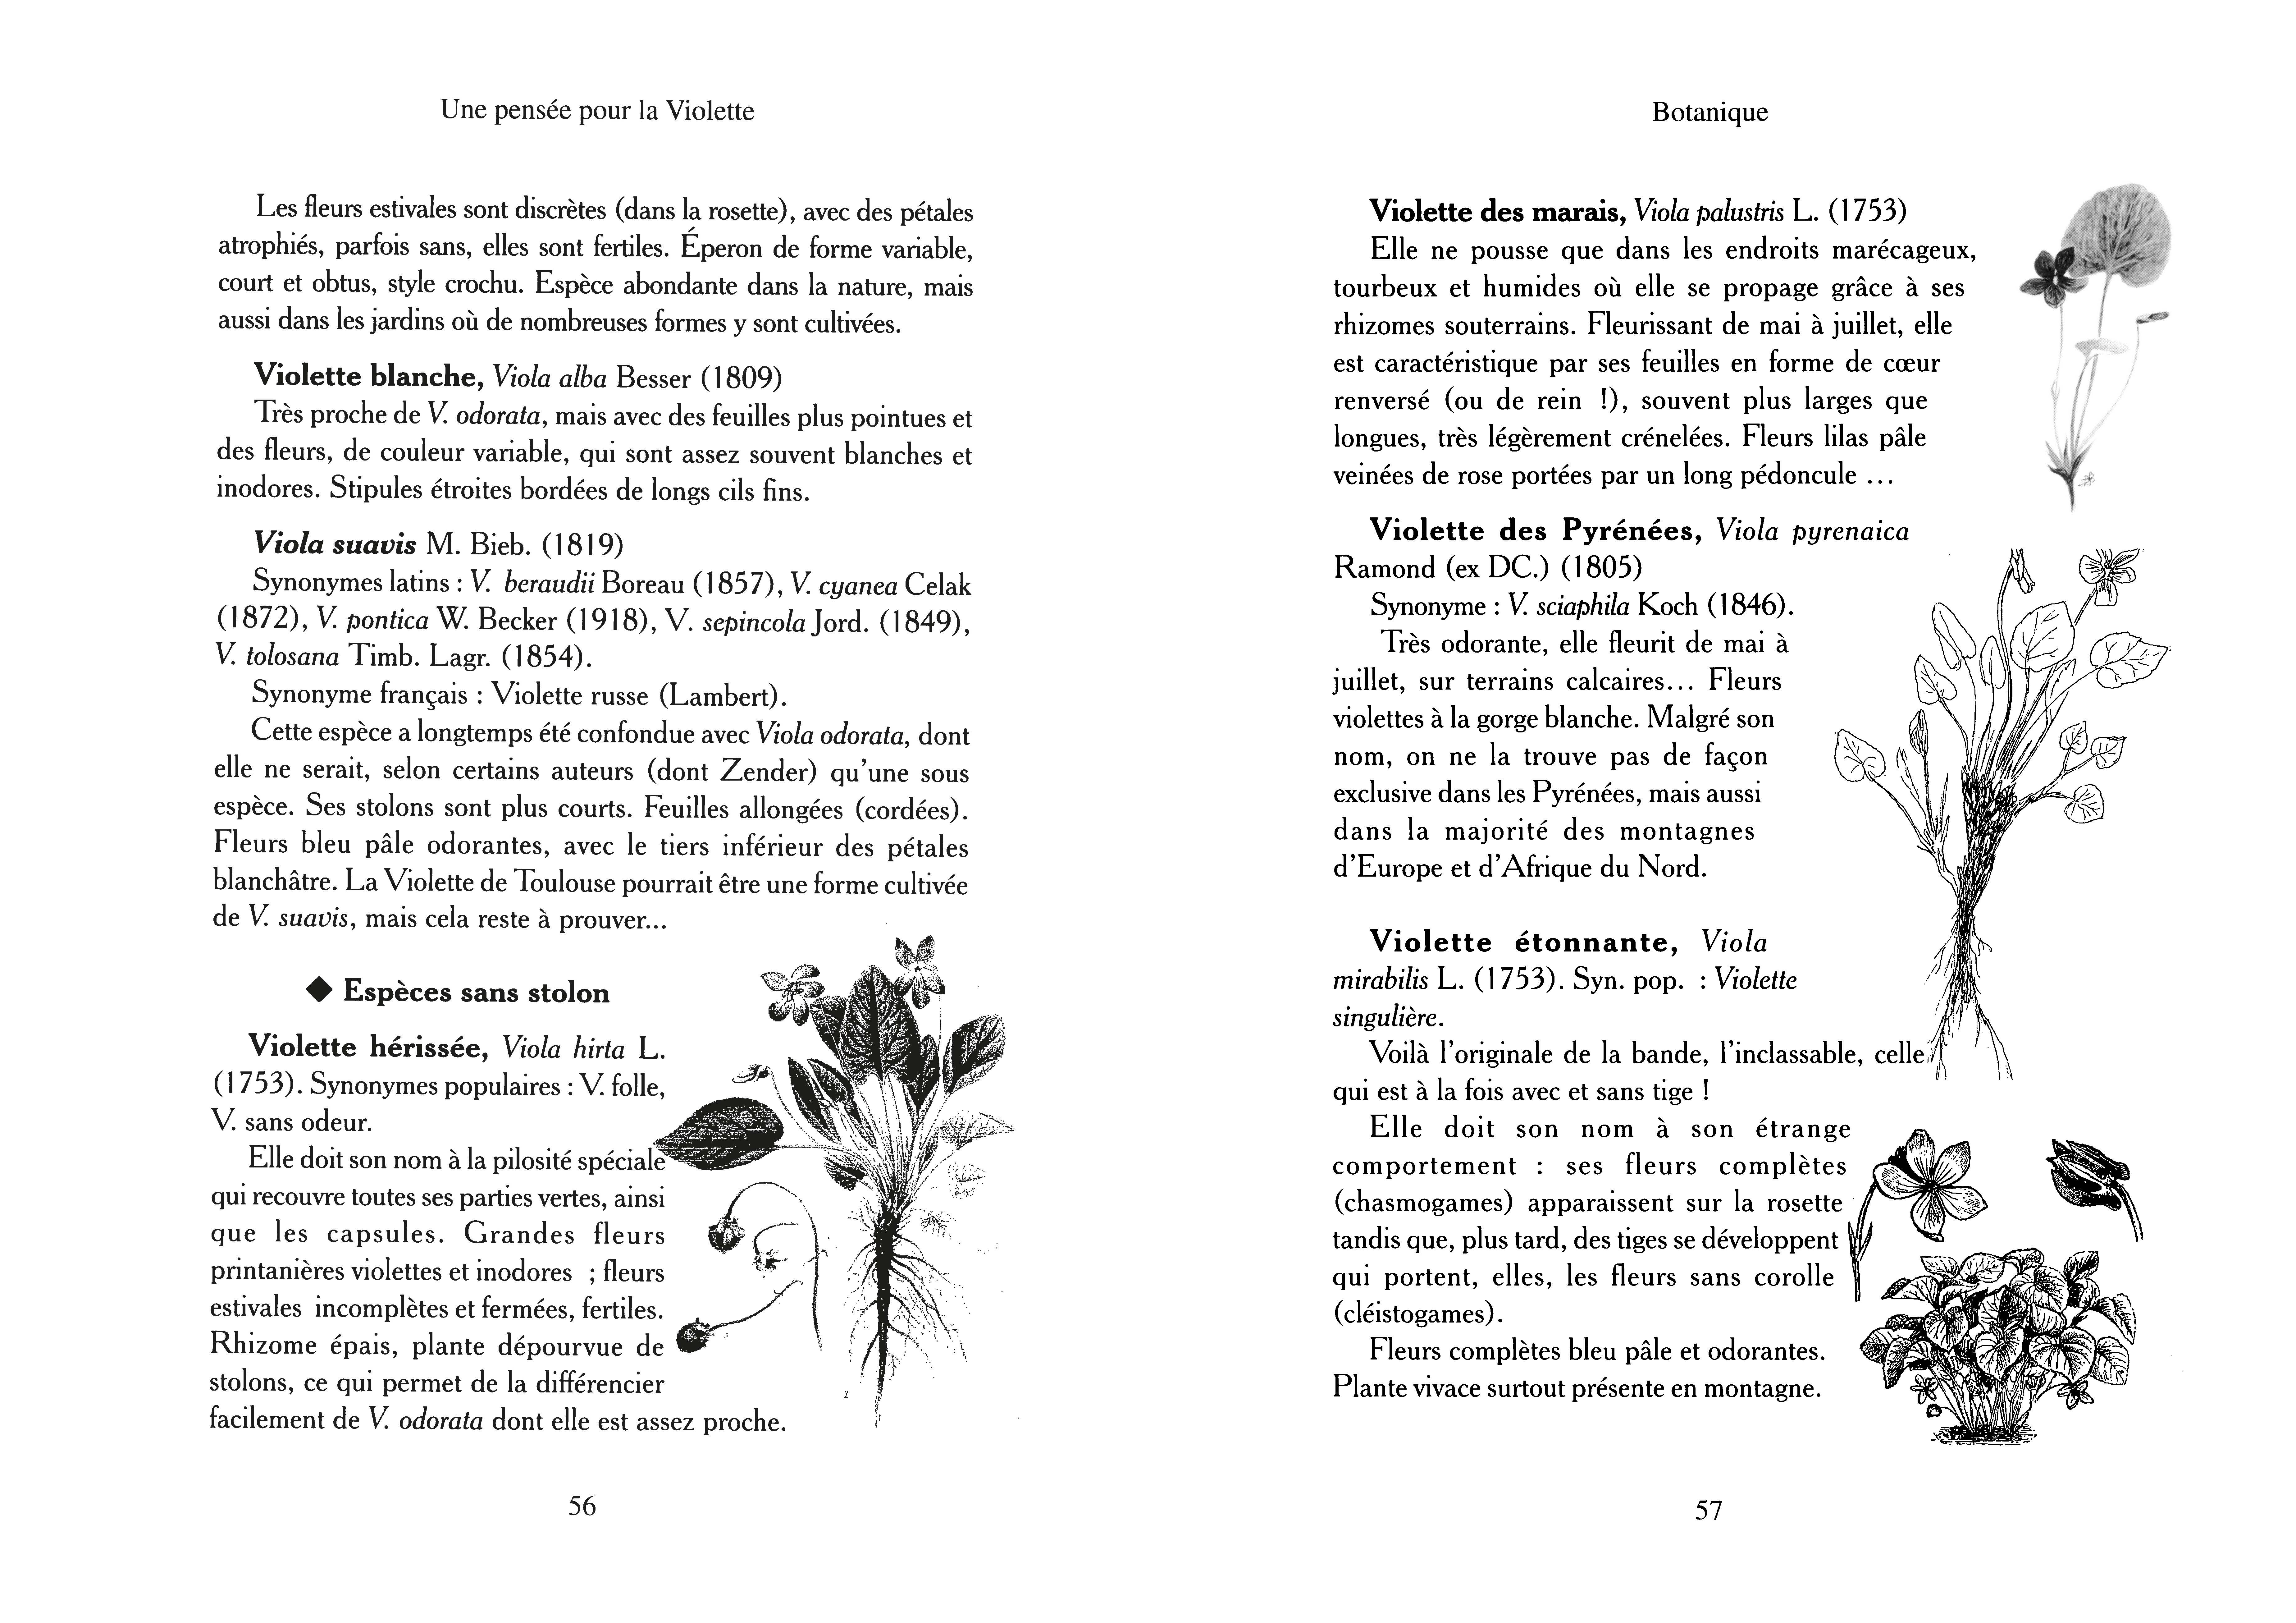 Terran Magazines - Une Pensée pour la violette (vol. 11)